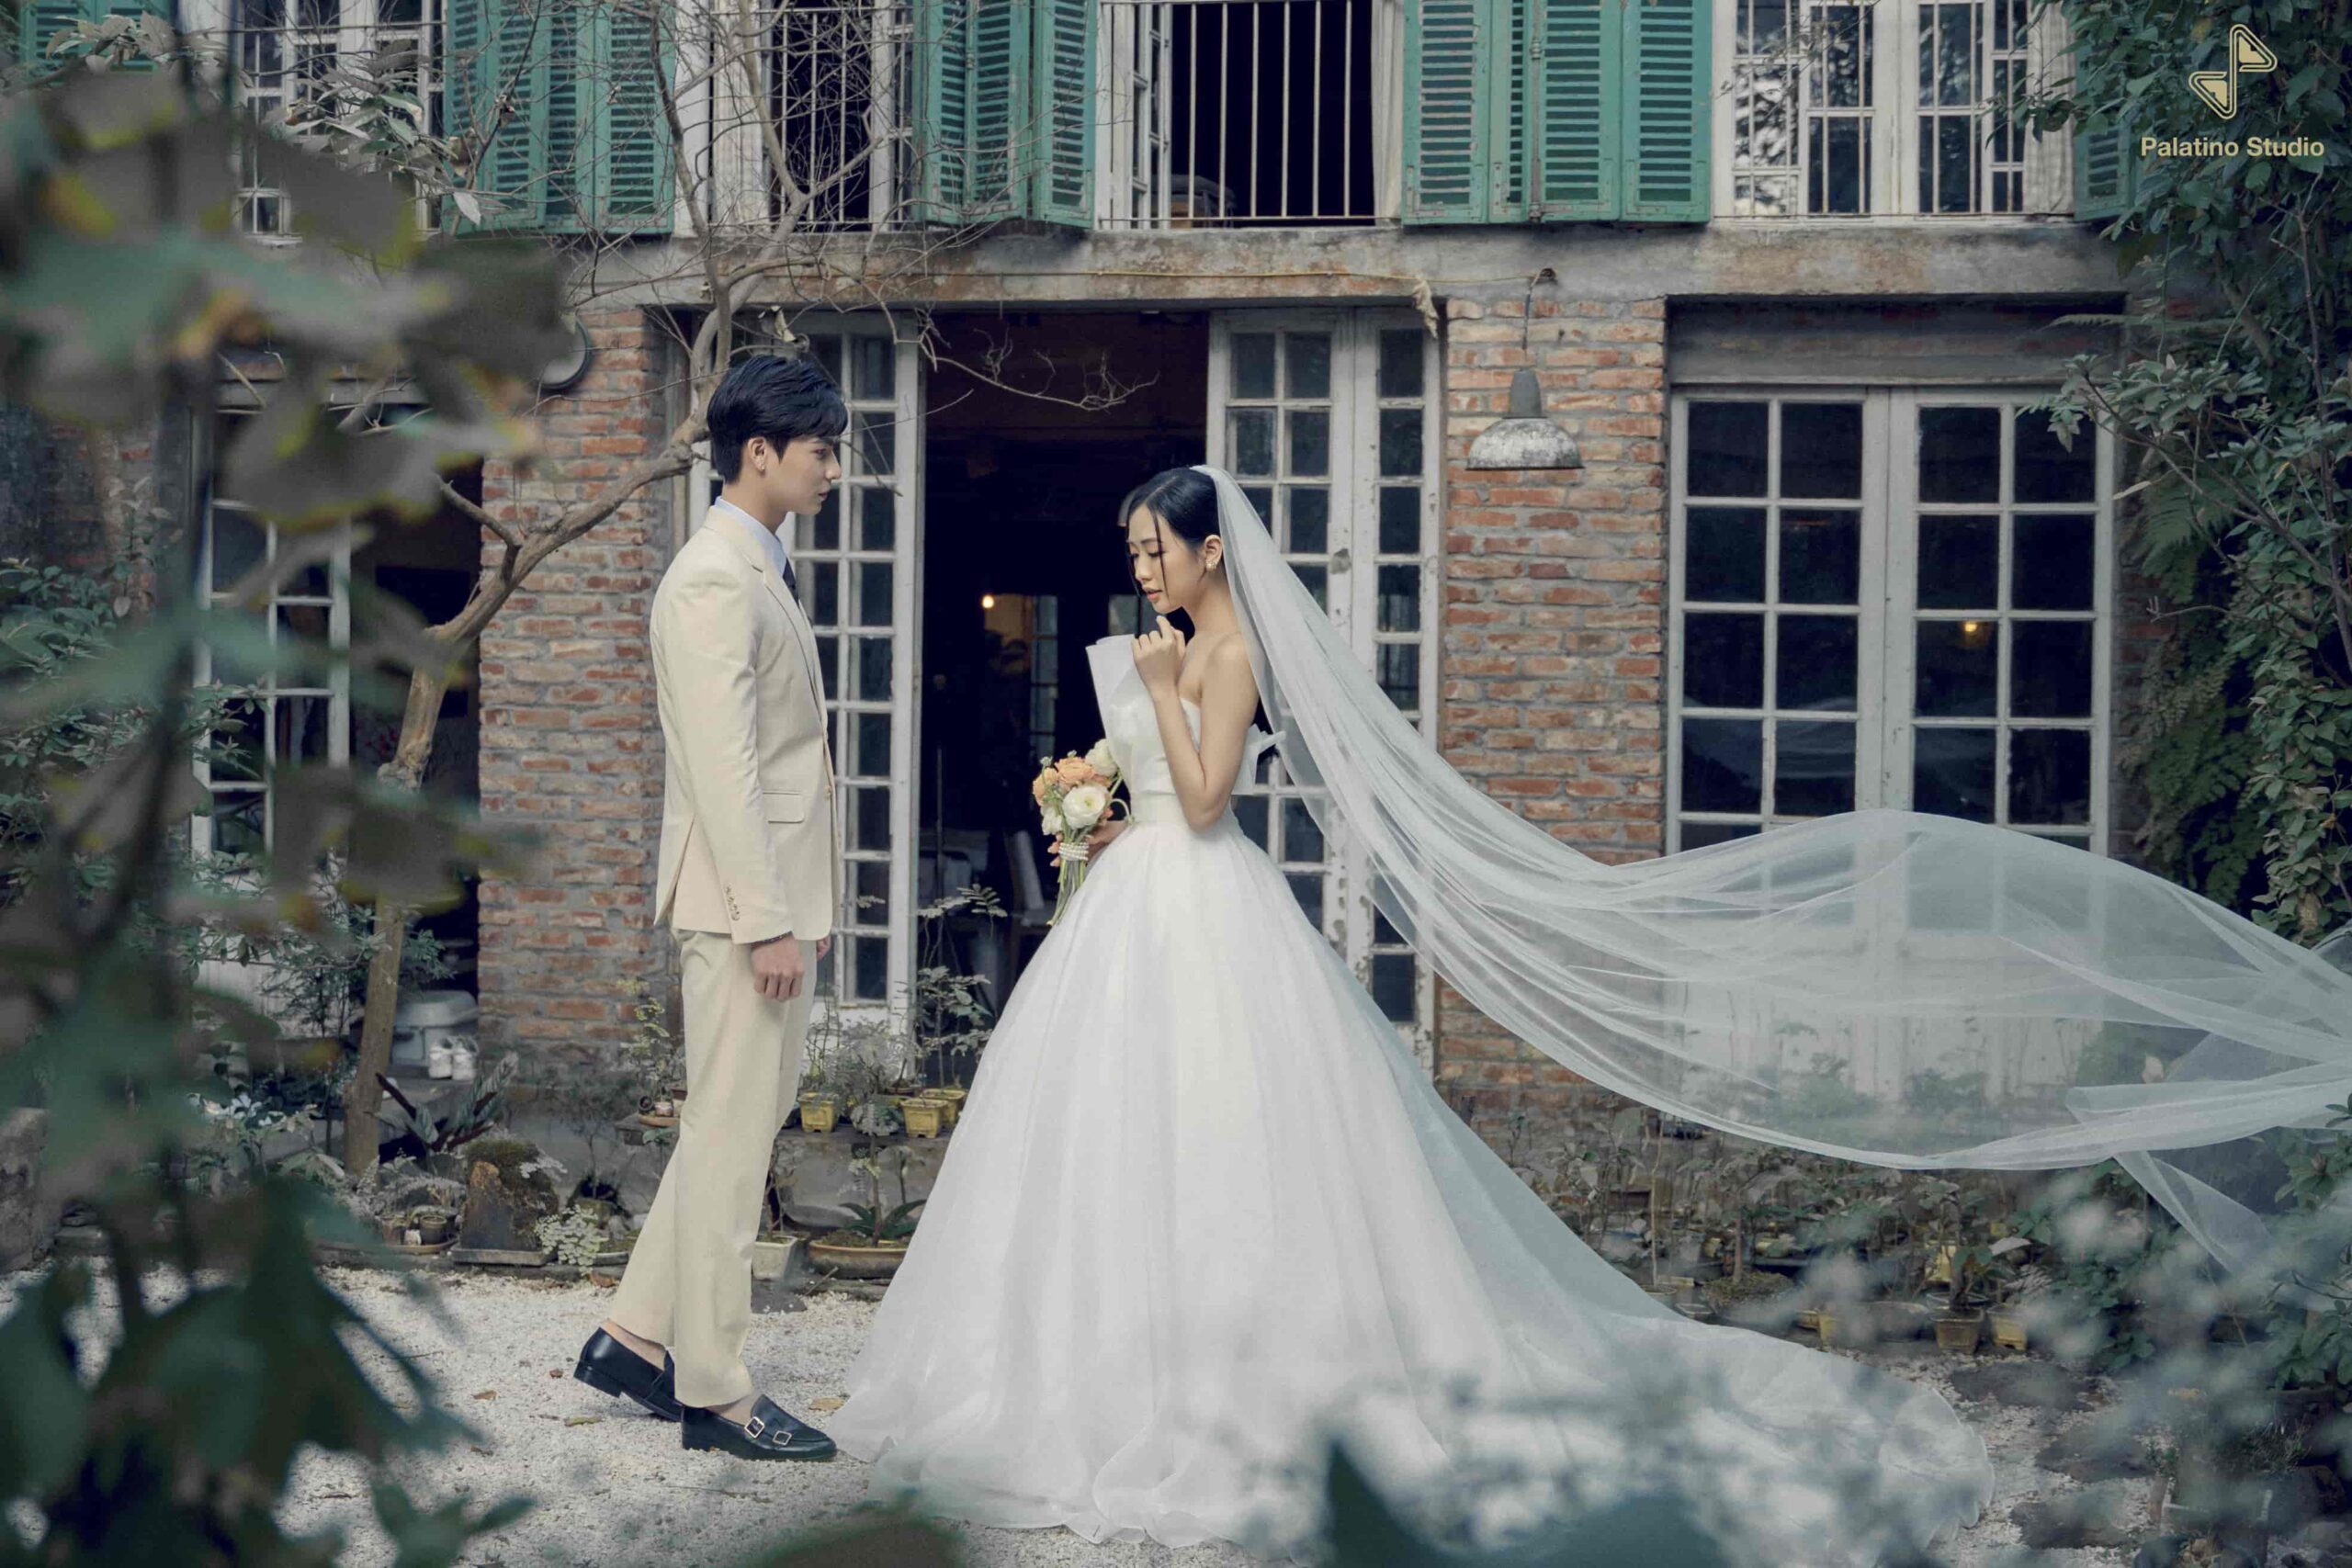 Palatino Studio - Dịch vụ chụp ảnh cưới chuyên nghiệp Hà Nội